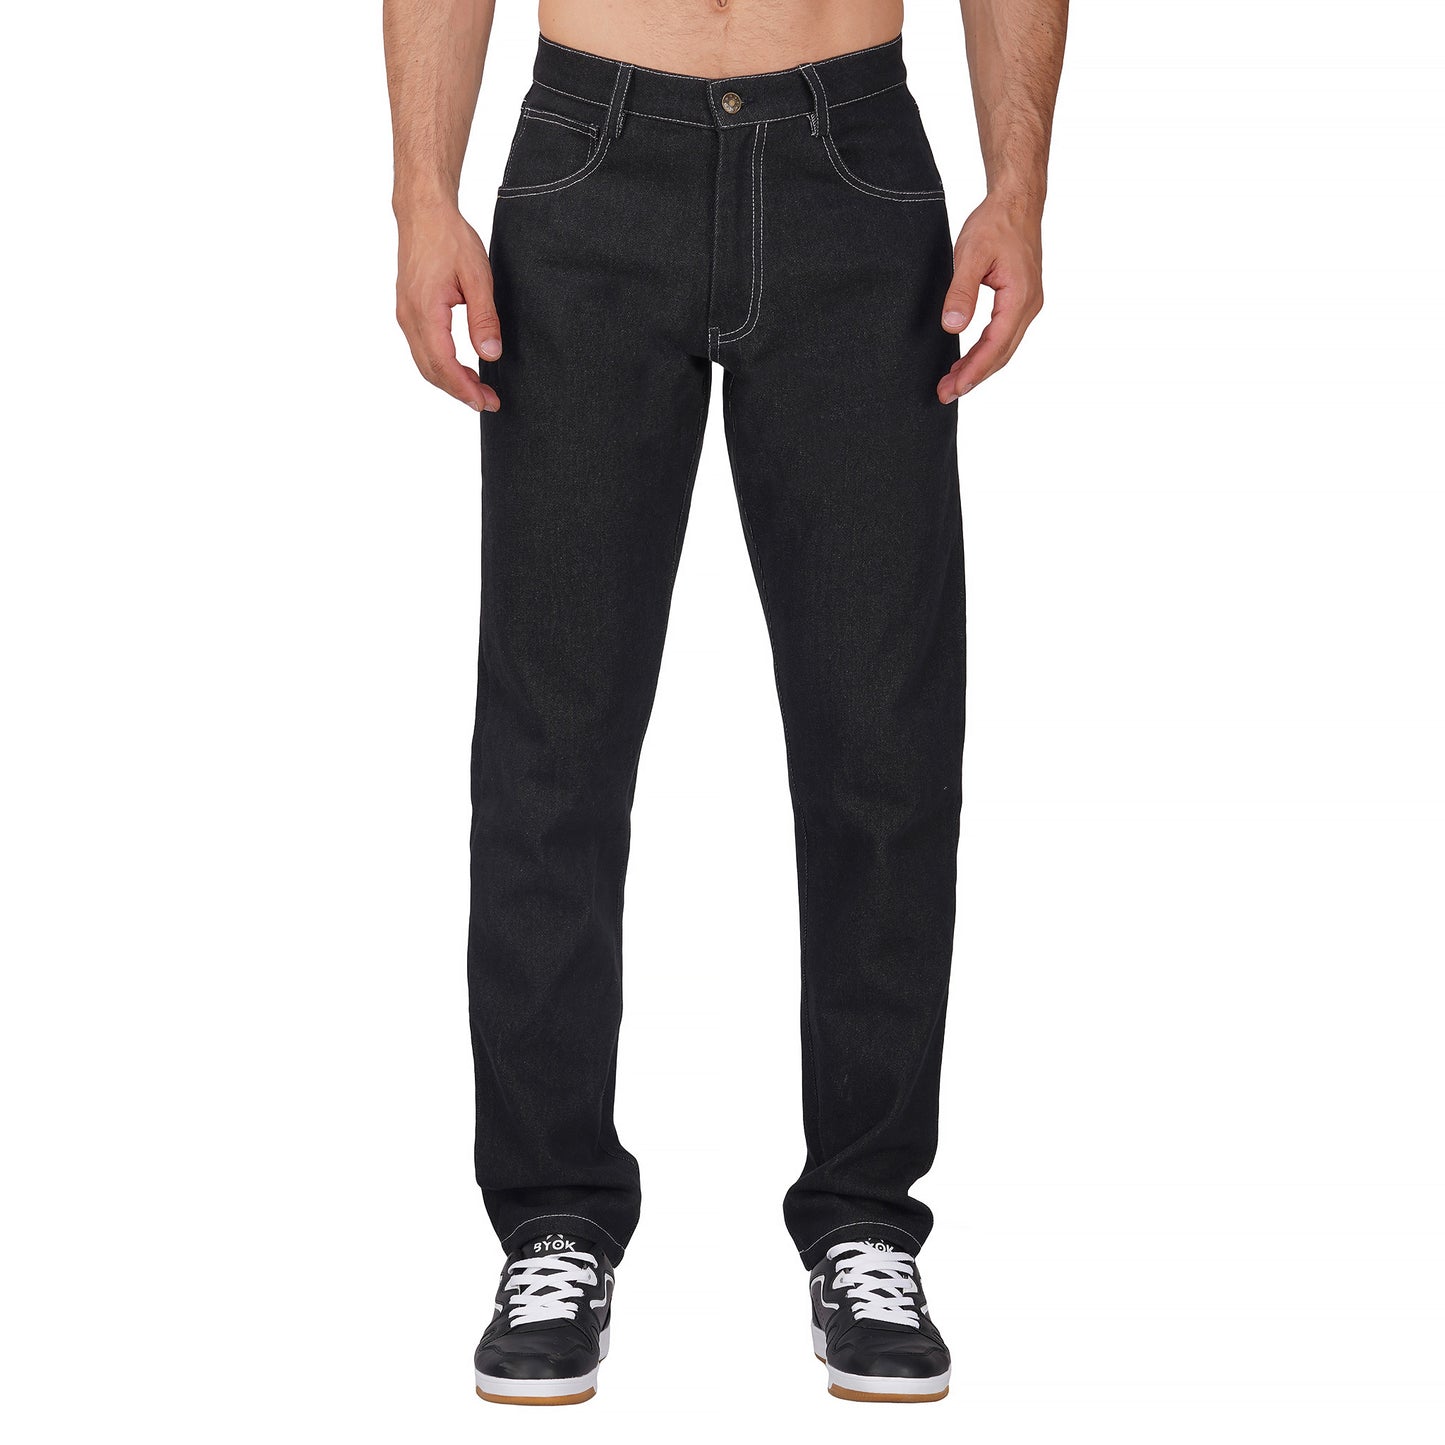 Black Denim Jeans - Fashiokart